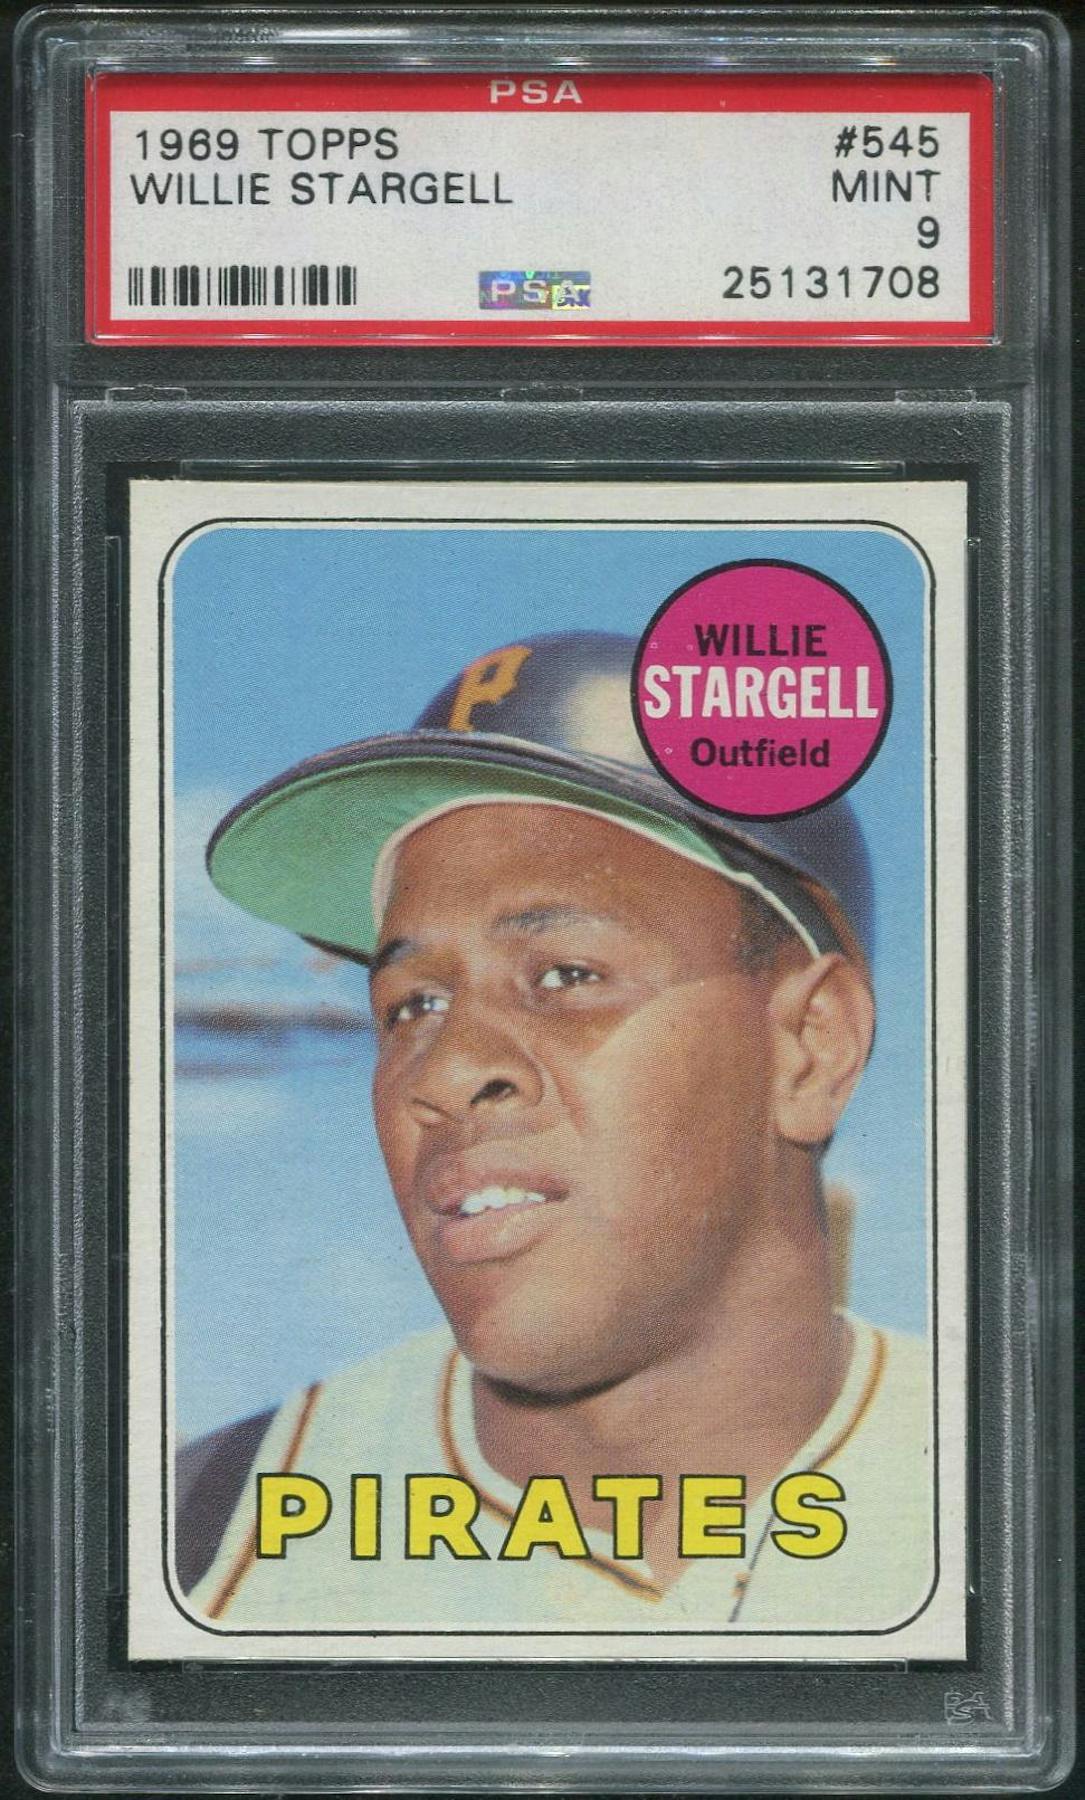 1969 Topps Baseball #545 Willie Stargell PSA 9 (MINT)